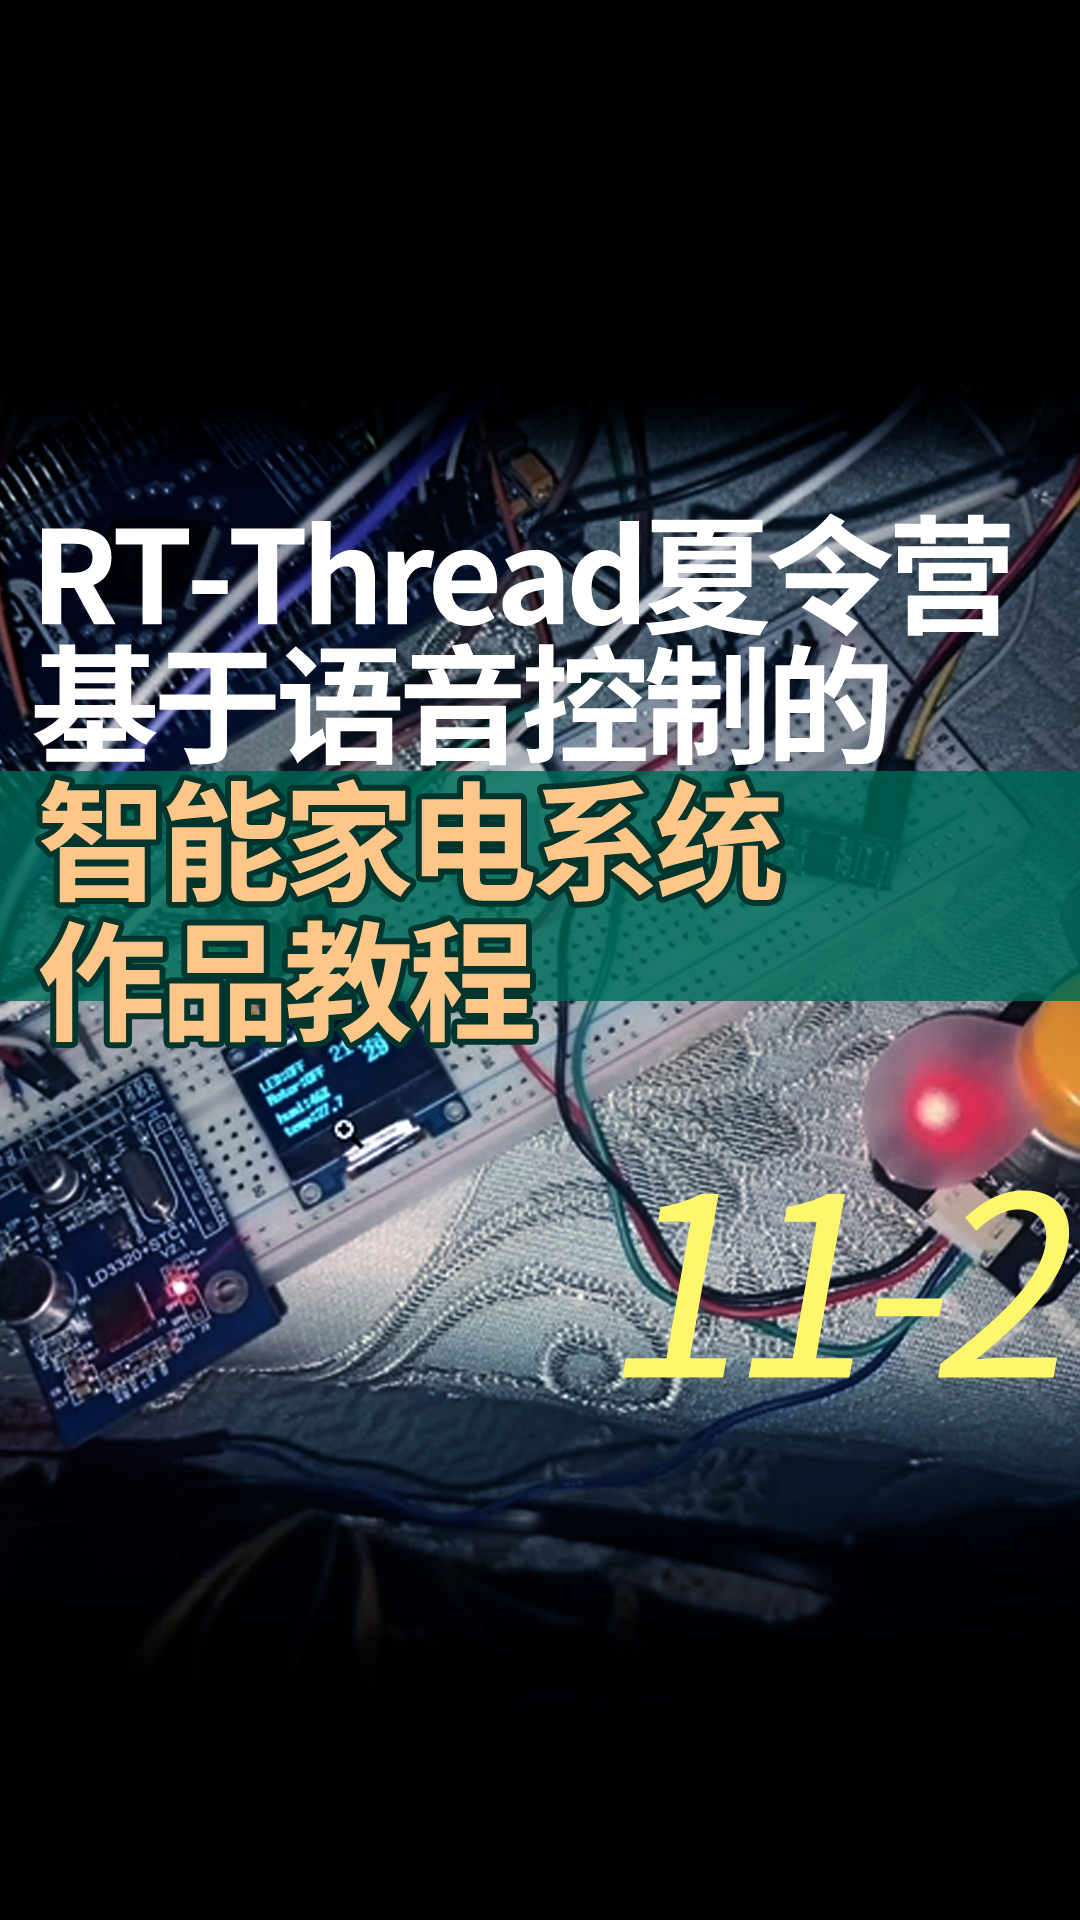 RT-Thread夏令营基于语音控制的智能家电系统作品教程11-2pwm设备的使用